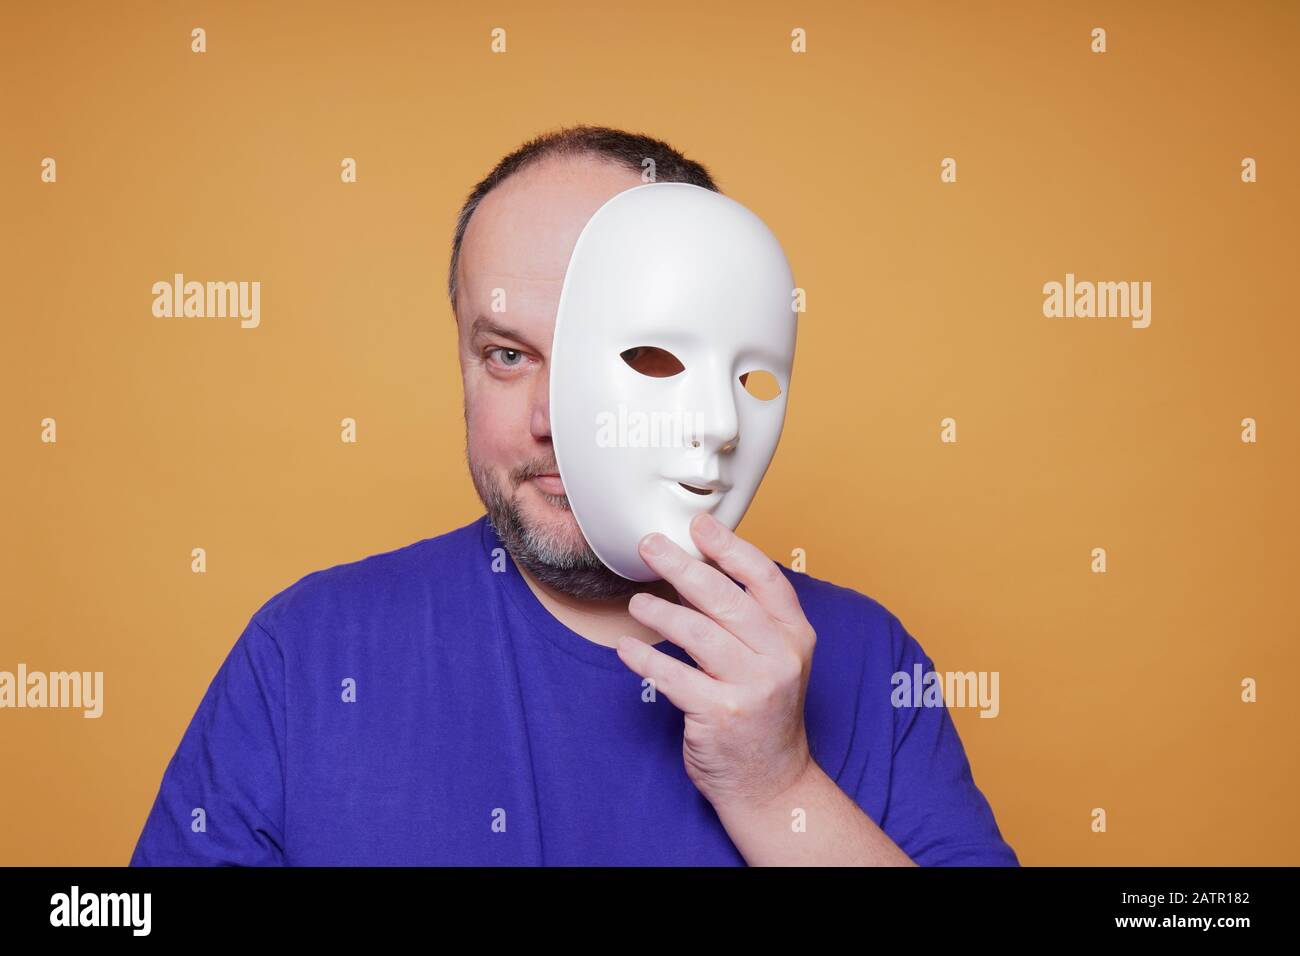 homme adulte prenant le masque révélant le visage et l'identité Banque D'Images